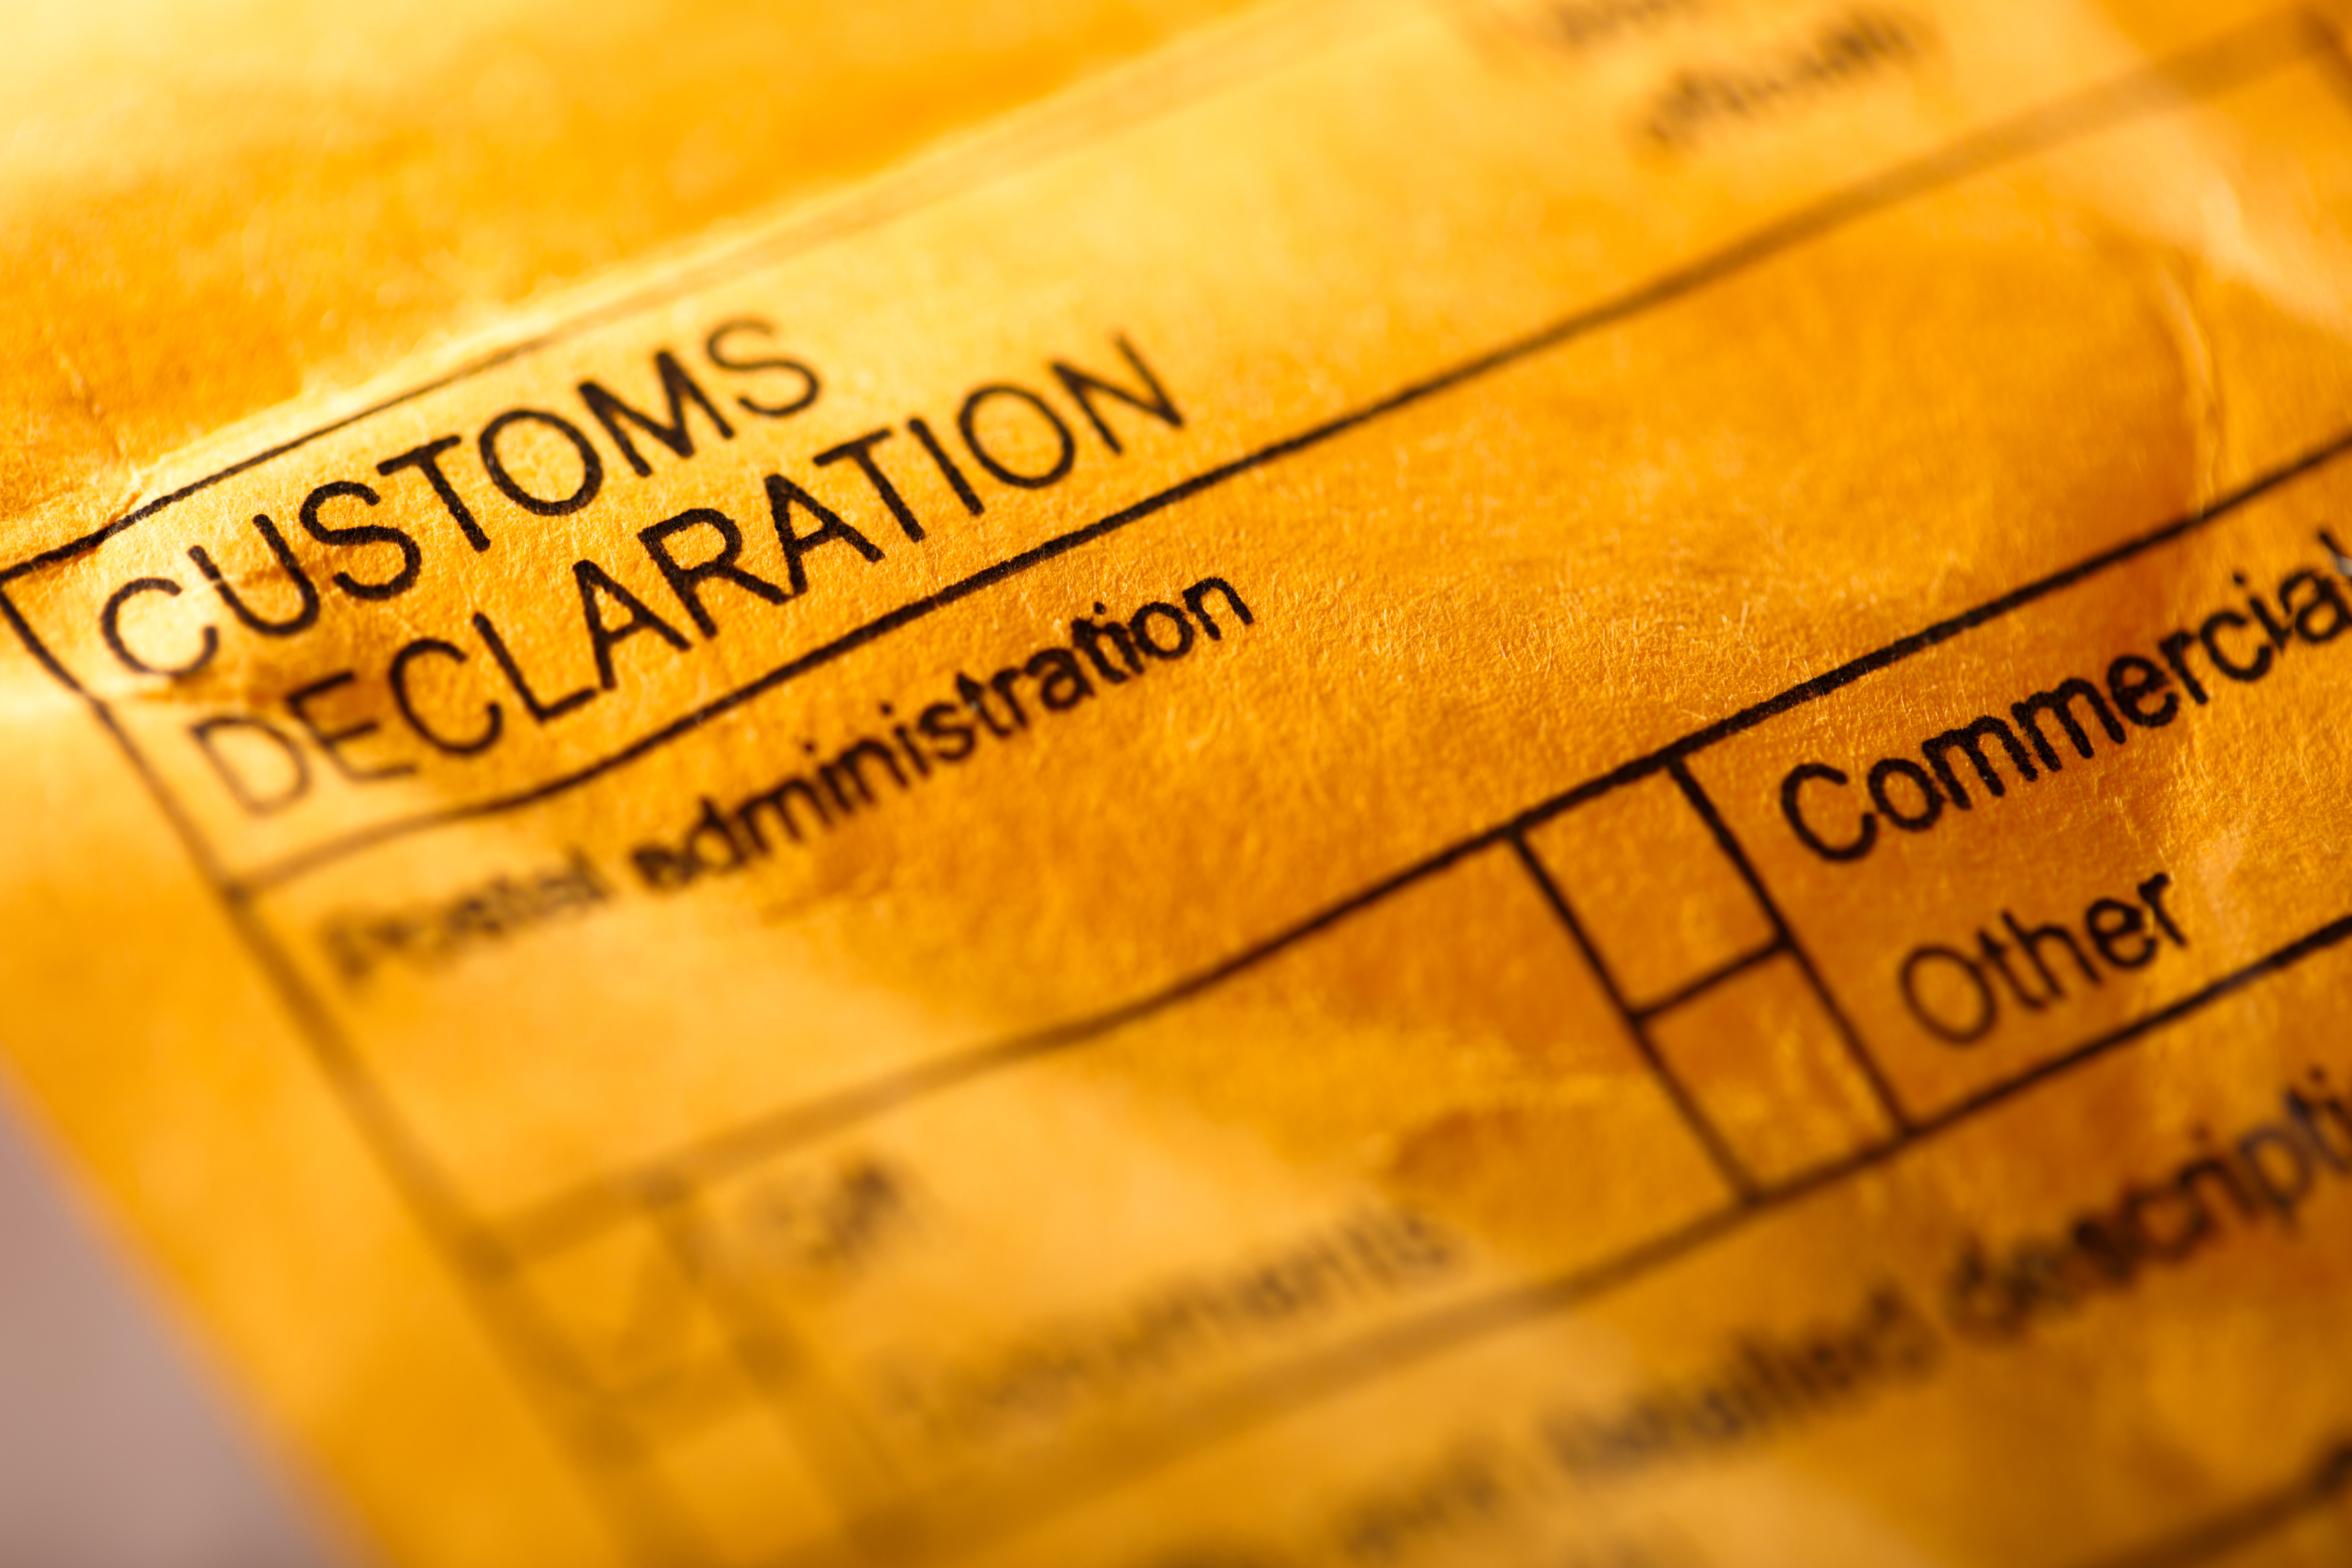 Image of a customs declaration form envelope